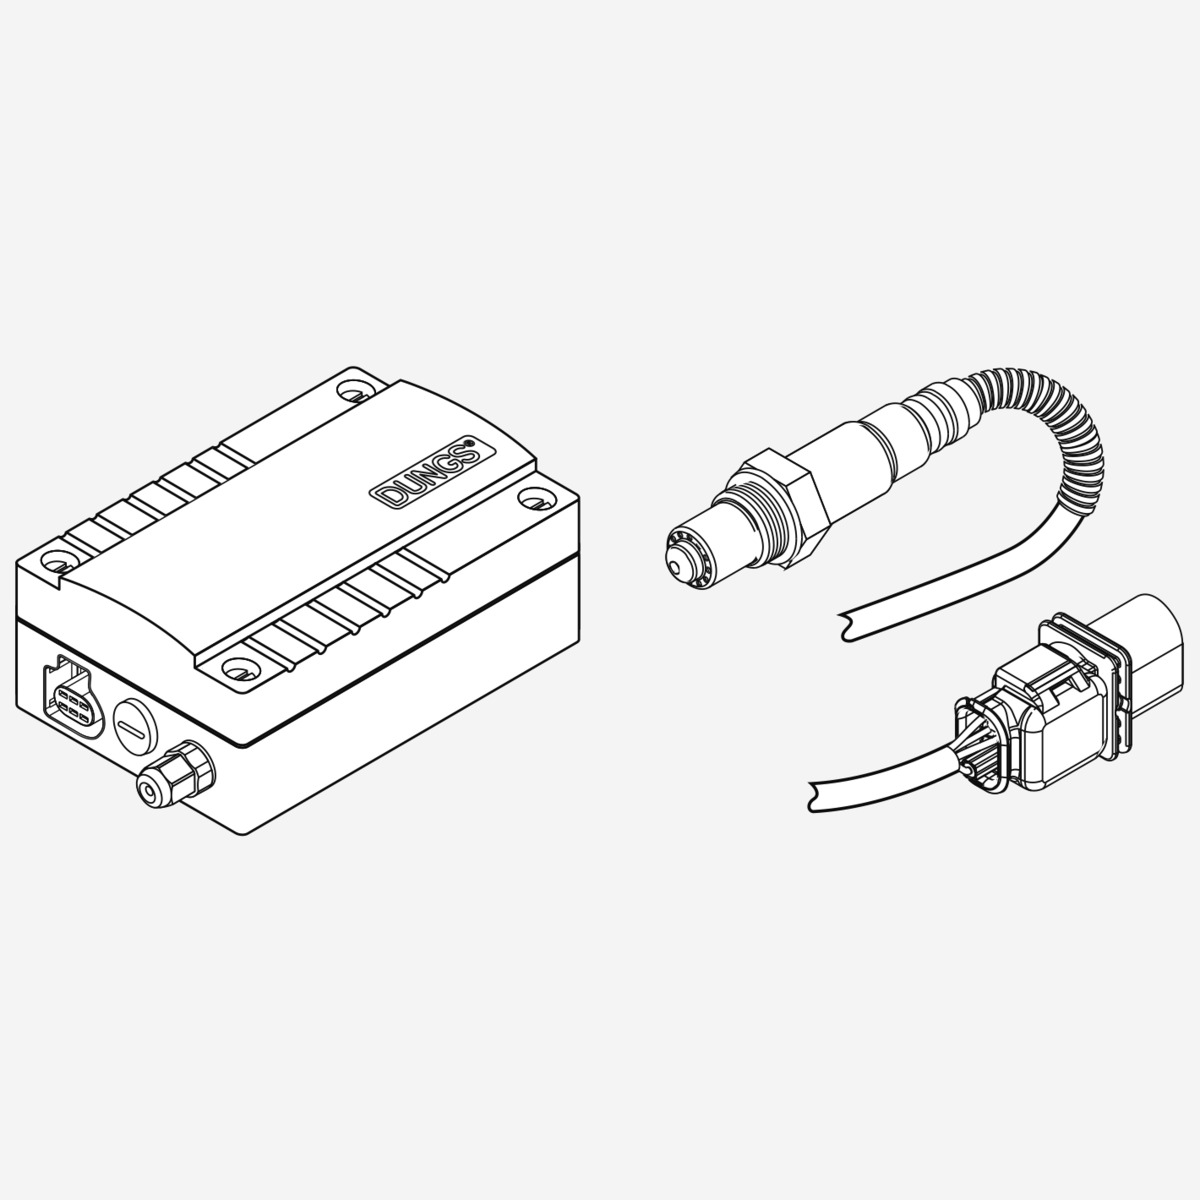 Weishaupt O2-Regelung mit Sonde, Modul, Flansch. und Kabelverbindung